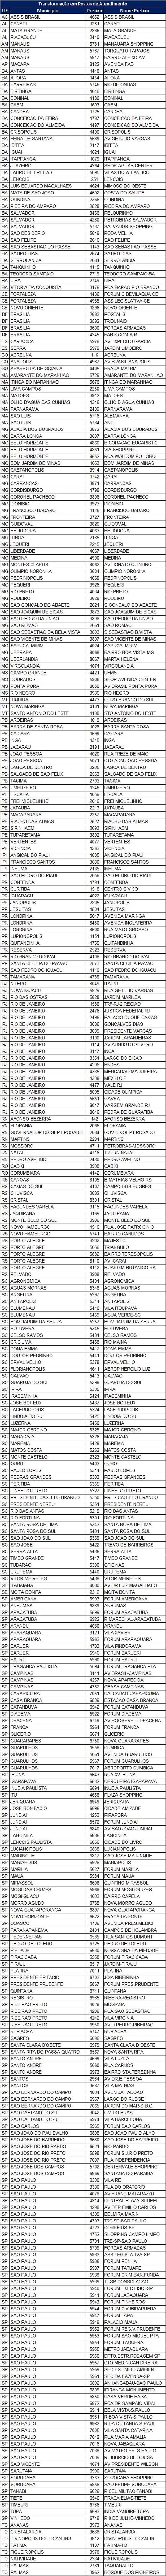 Lista de agências do BB que serão fechadas. (Foto: Banco do Brasil)